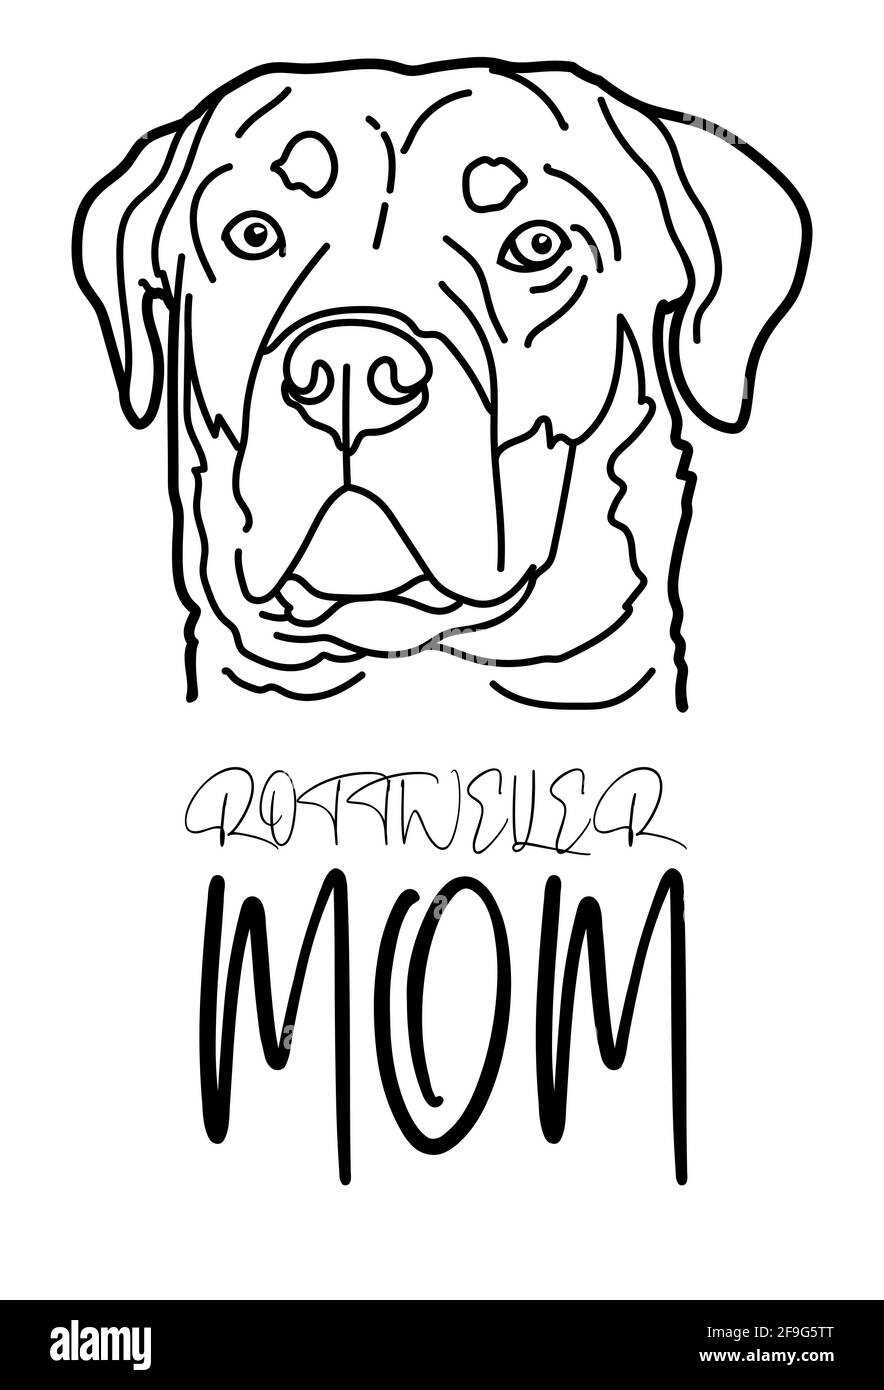 Rottweiler cane razza animale domestico ritratto e scritta a mano, Rottweiler mamma, isolato su sfondo bianco, illustrazione vettoriale. Illustrazione Vettoriale